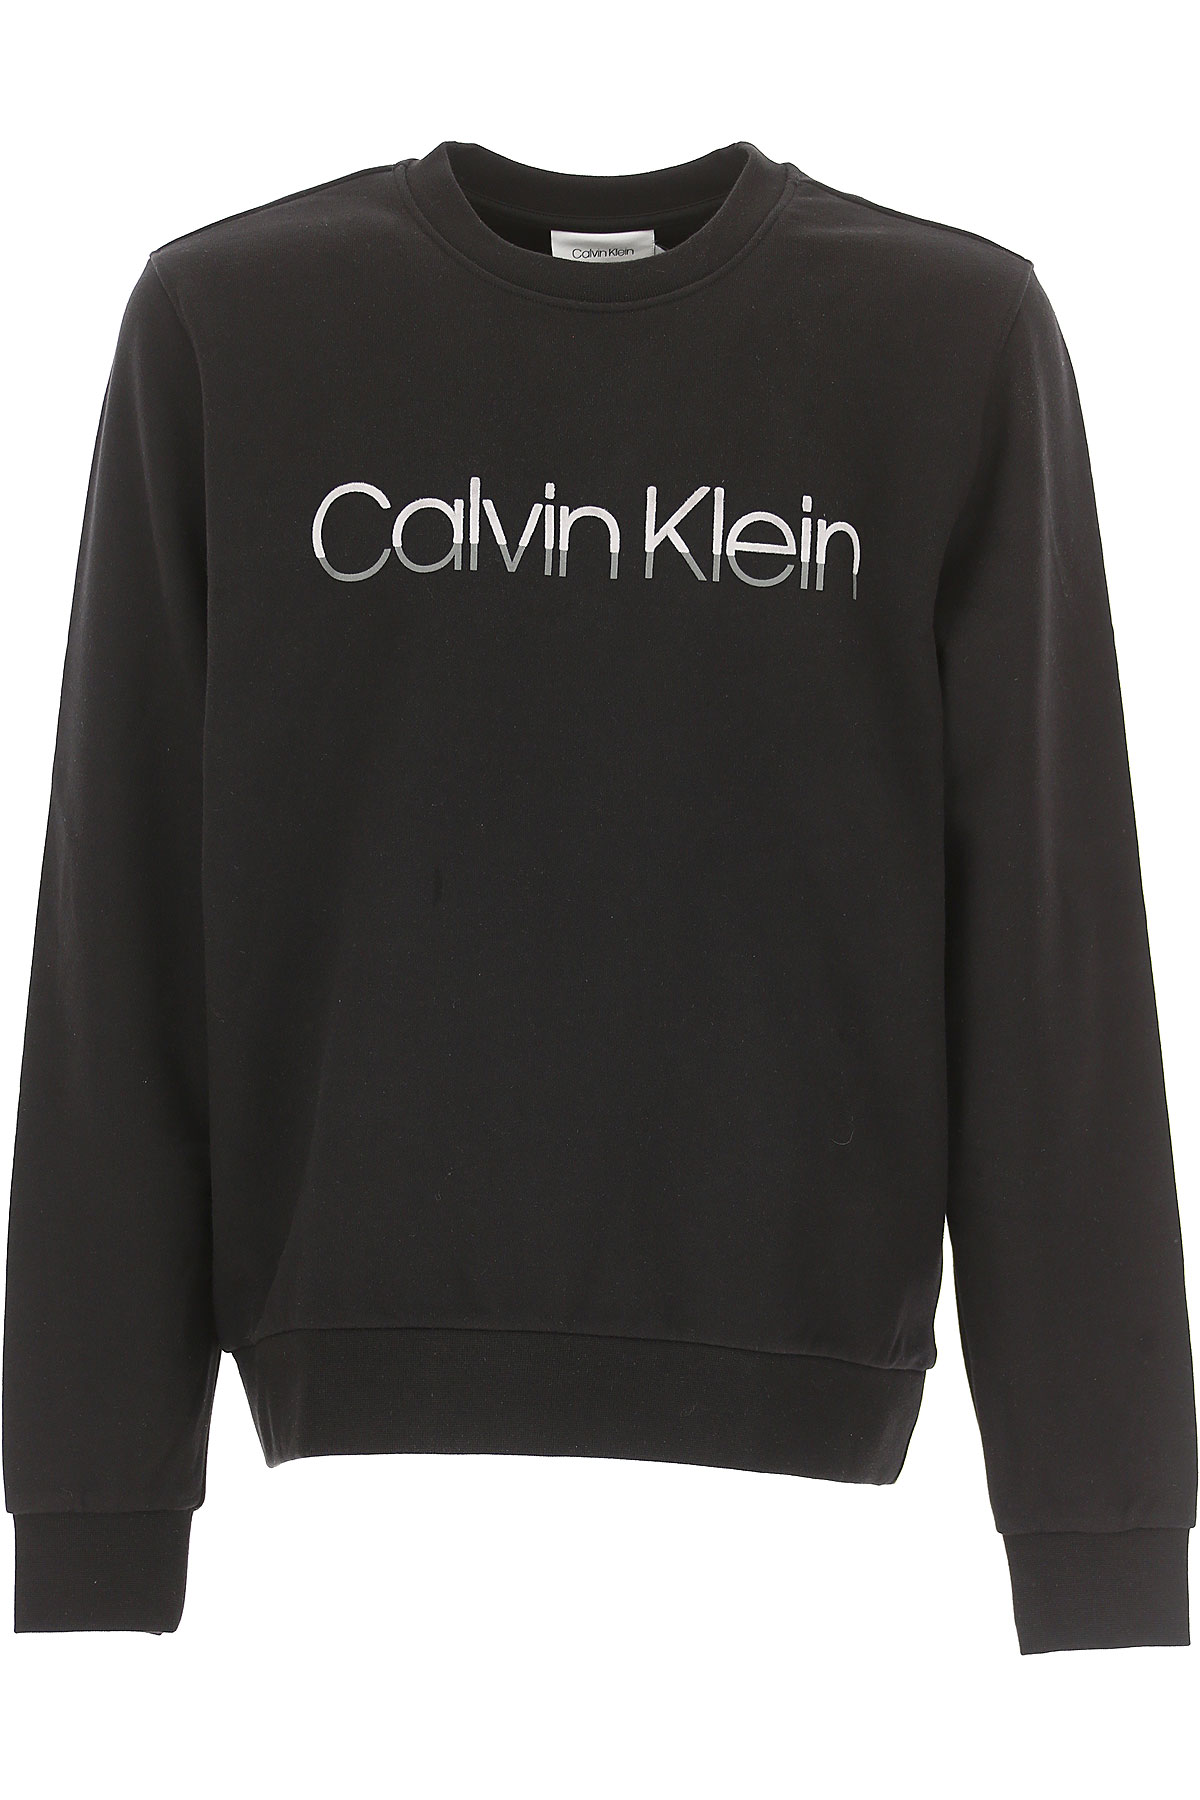 Calvin Klein Sweatshirt für Herren, Kapuzenpulli, Hoodie, Sweats Günstig im Outlet Sale, Schwarz, Baumwolle, 2017, M XXL